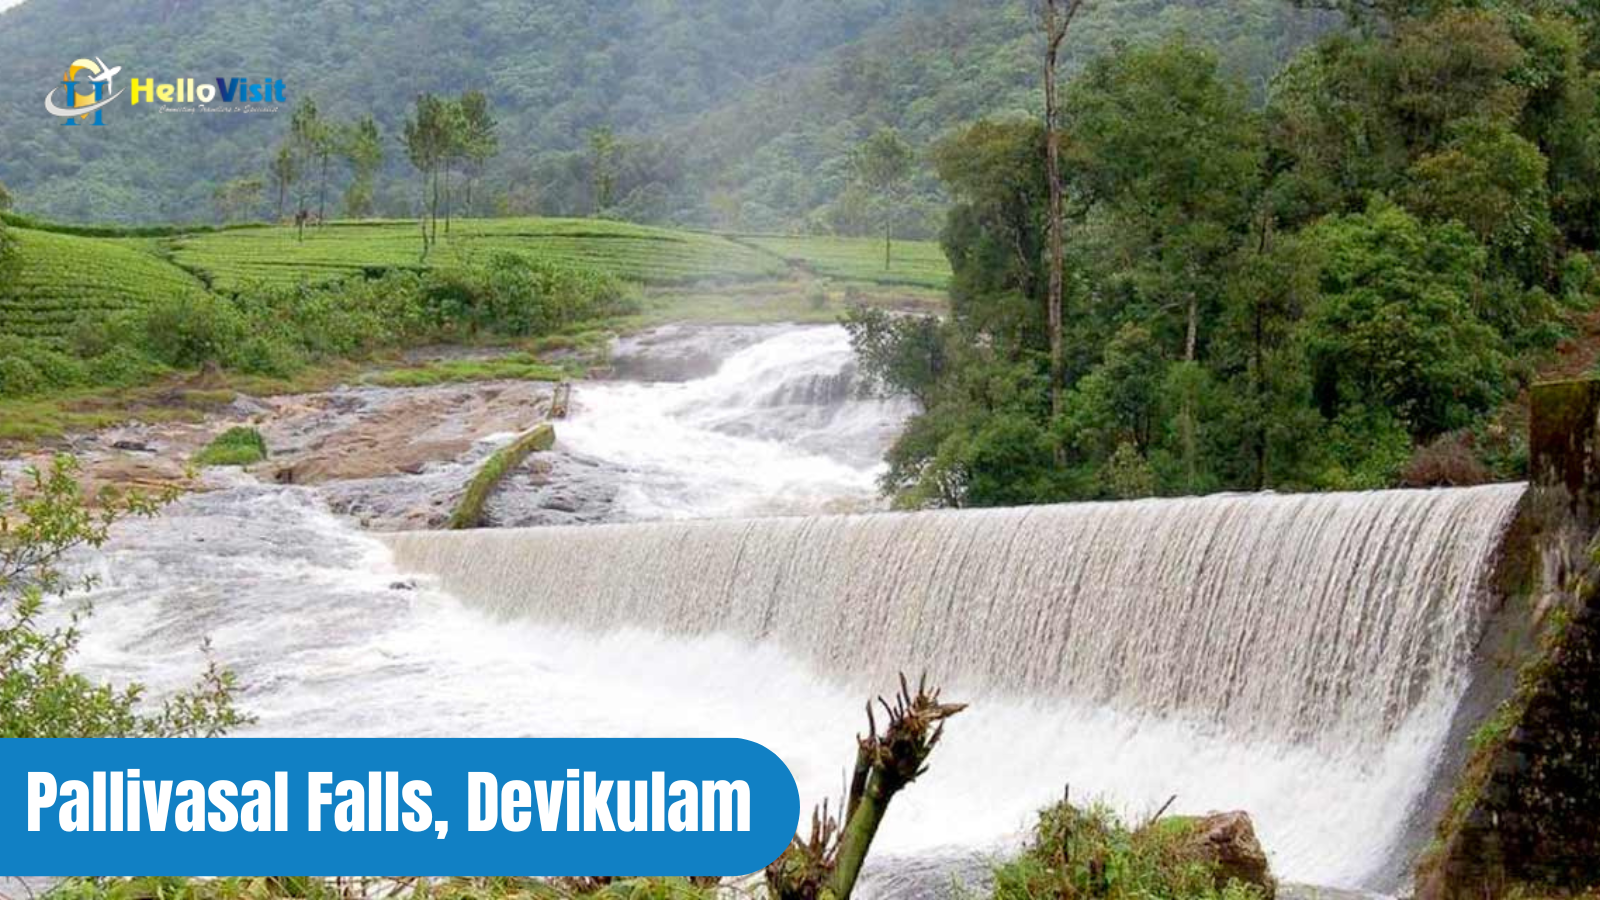 Pallivasal Falls, Devikulam